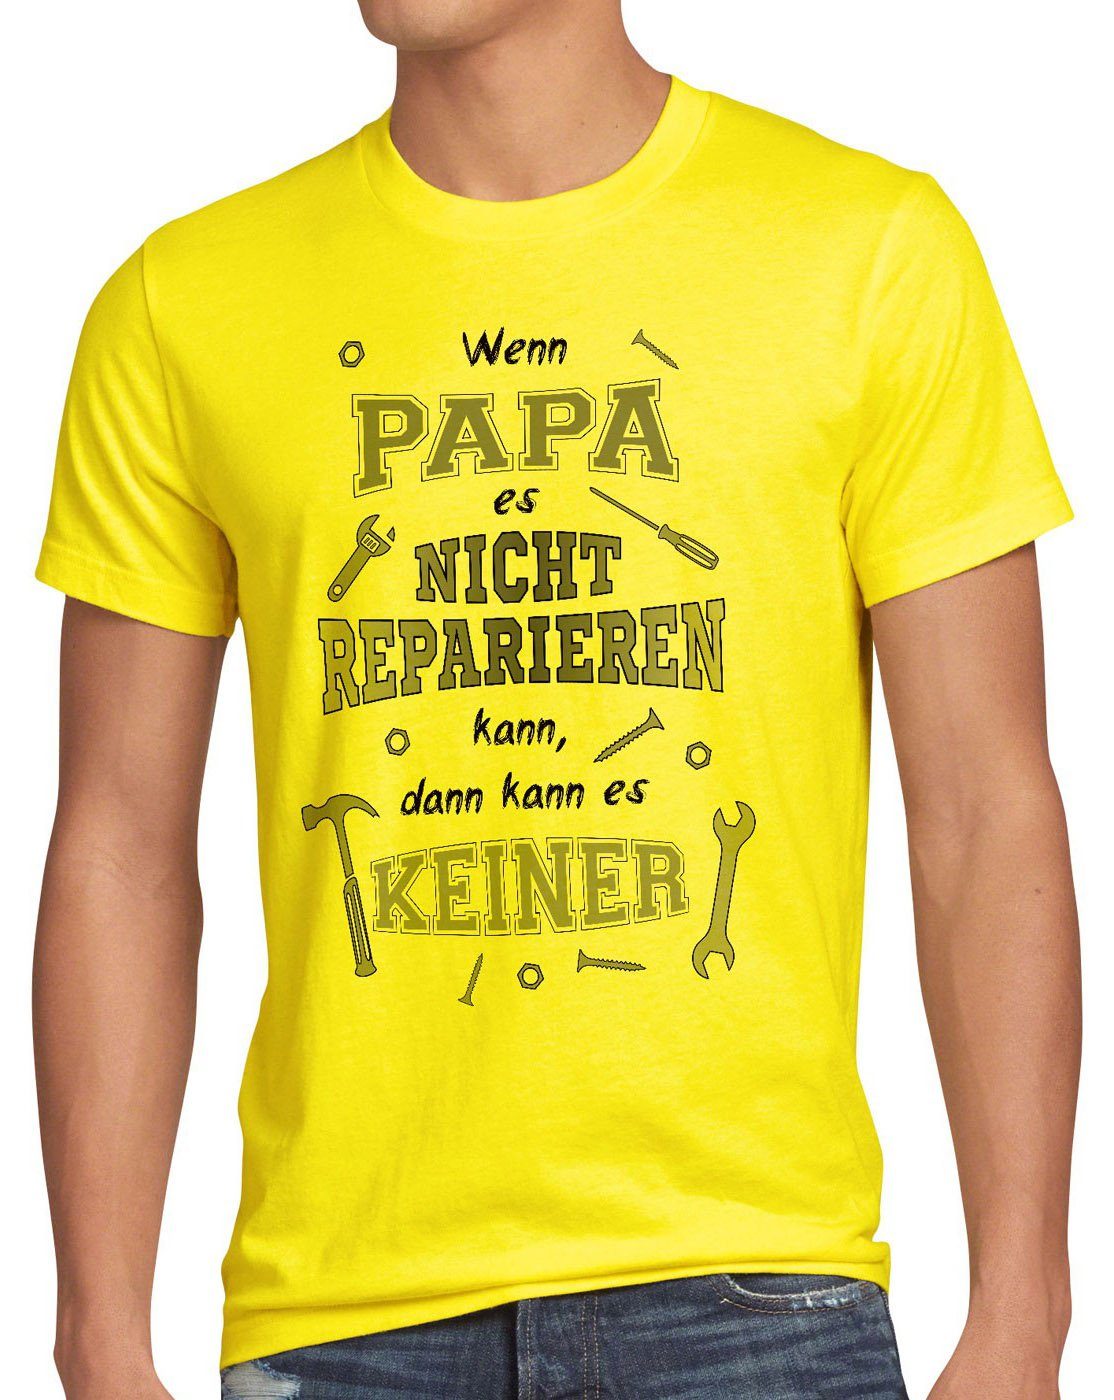 Wenn Herren gelb es Funshirt Papa Print-Shirt reparieren Spruch style3 kann T-Shirt Shirt nicht keiner